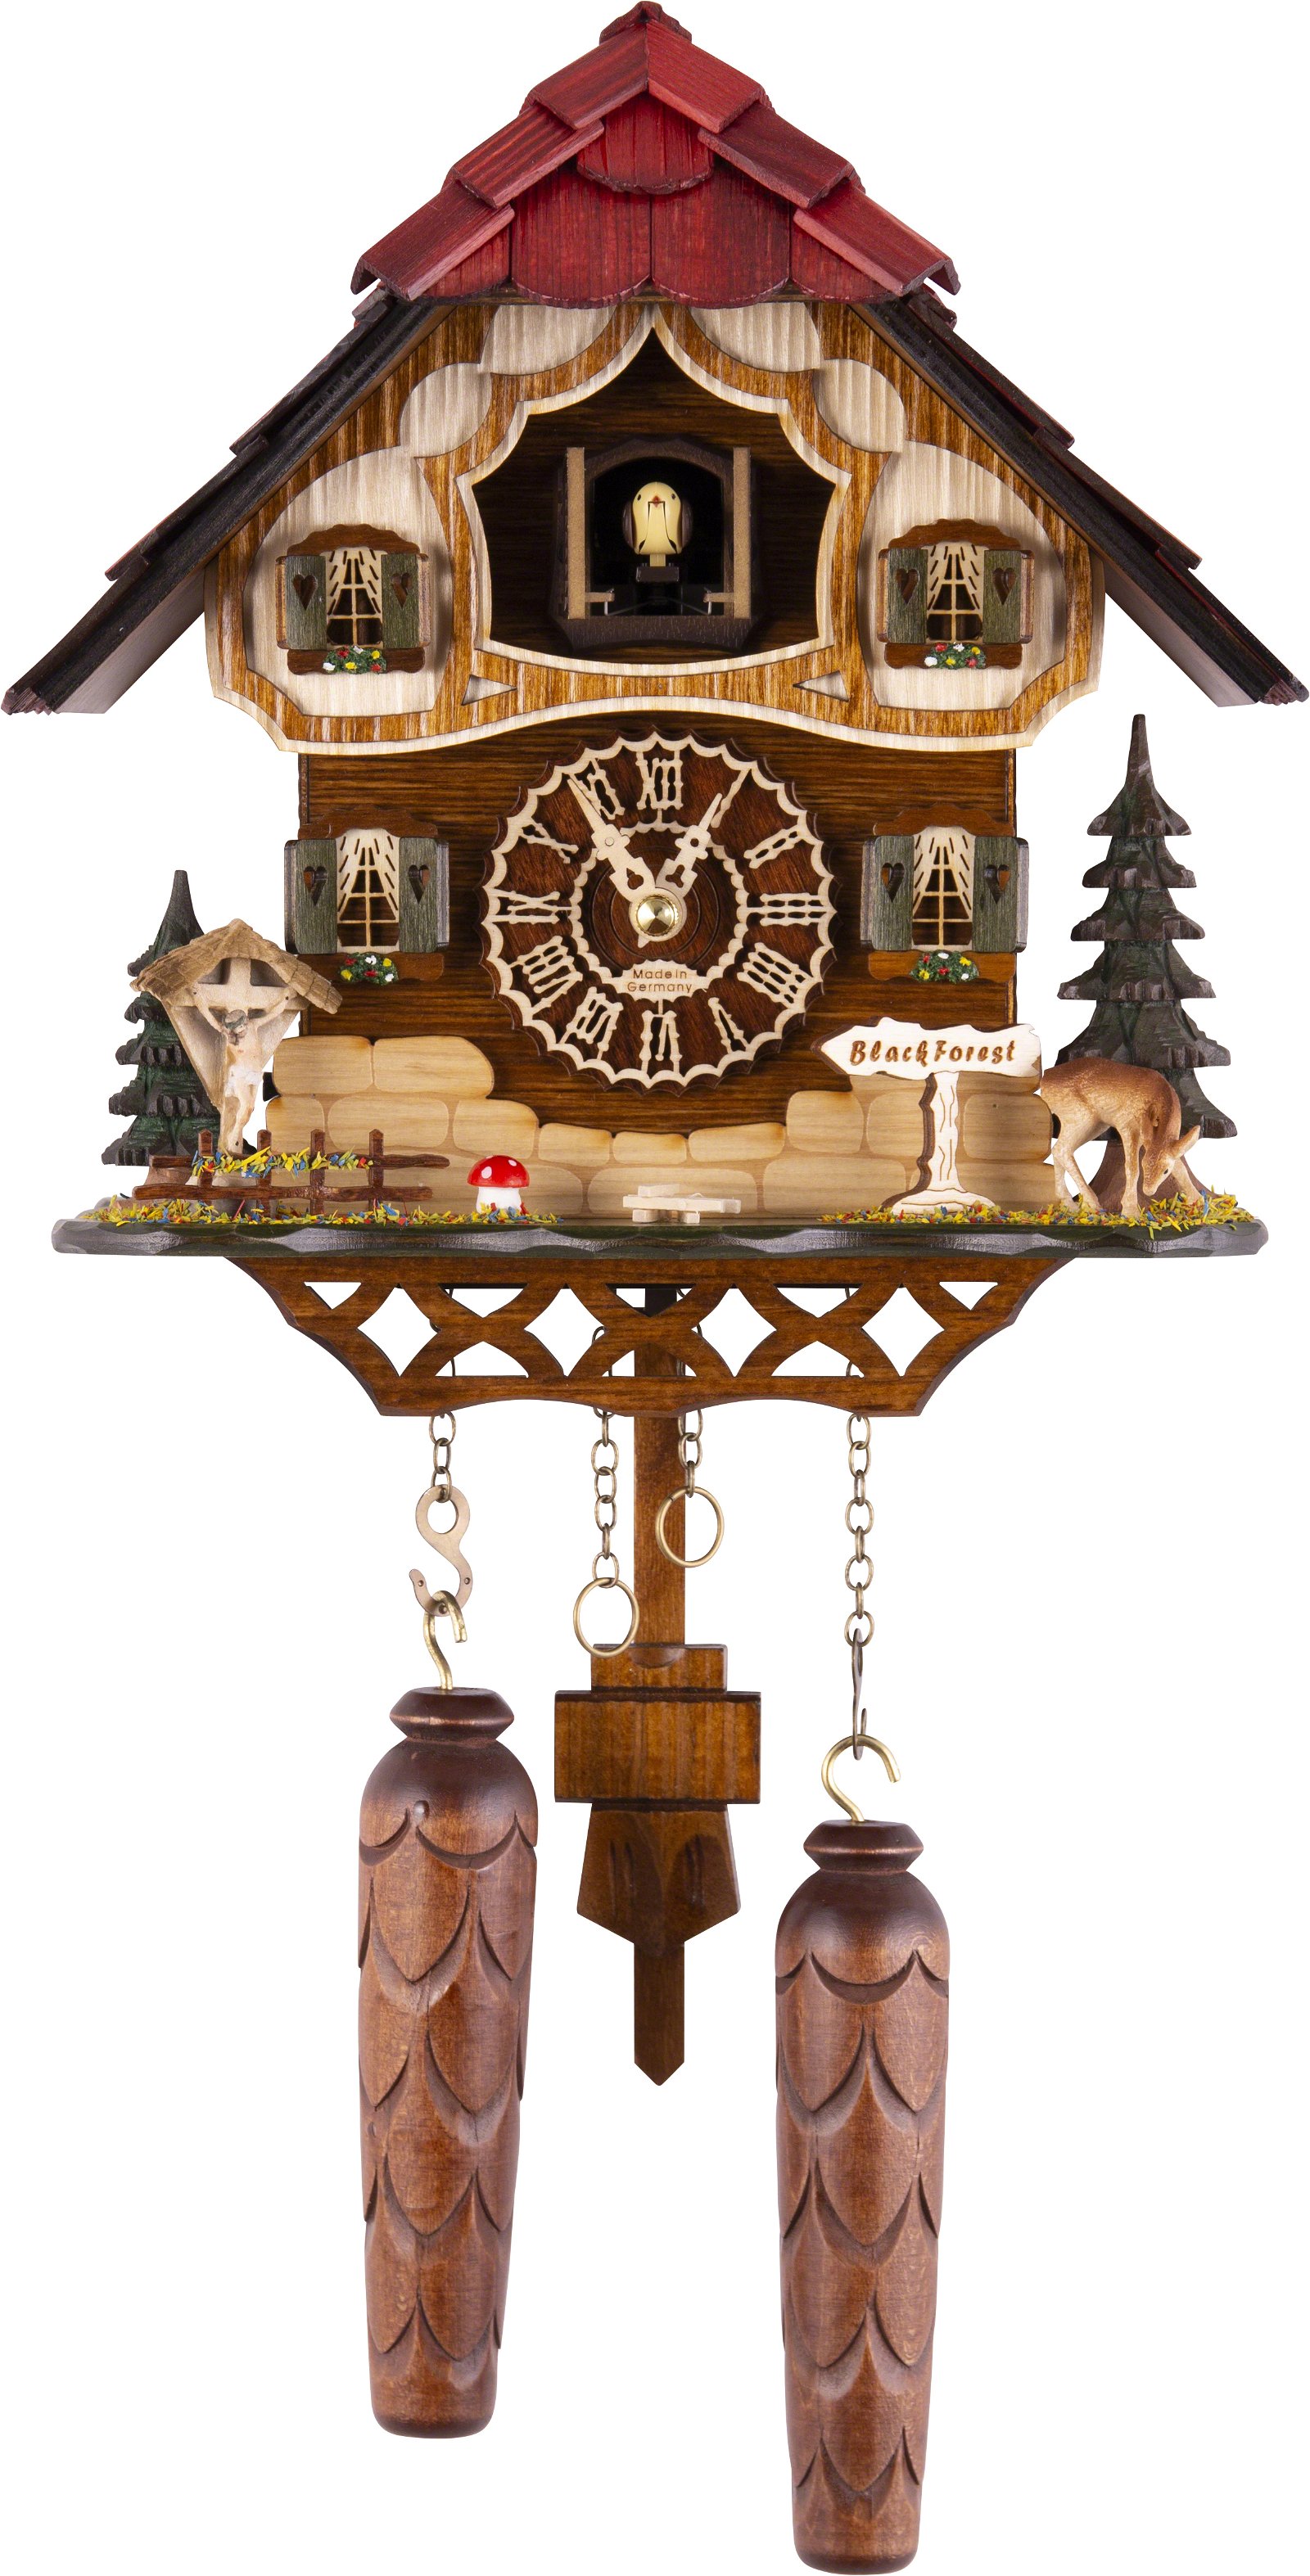 Kuckucksuhr Quarz-Uhrwerk Chalet-Stil 26cm von Trenkle Uhren